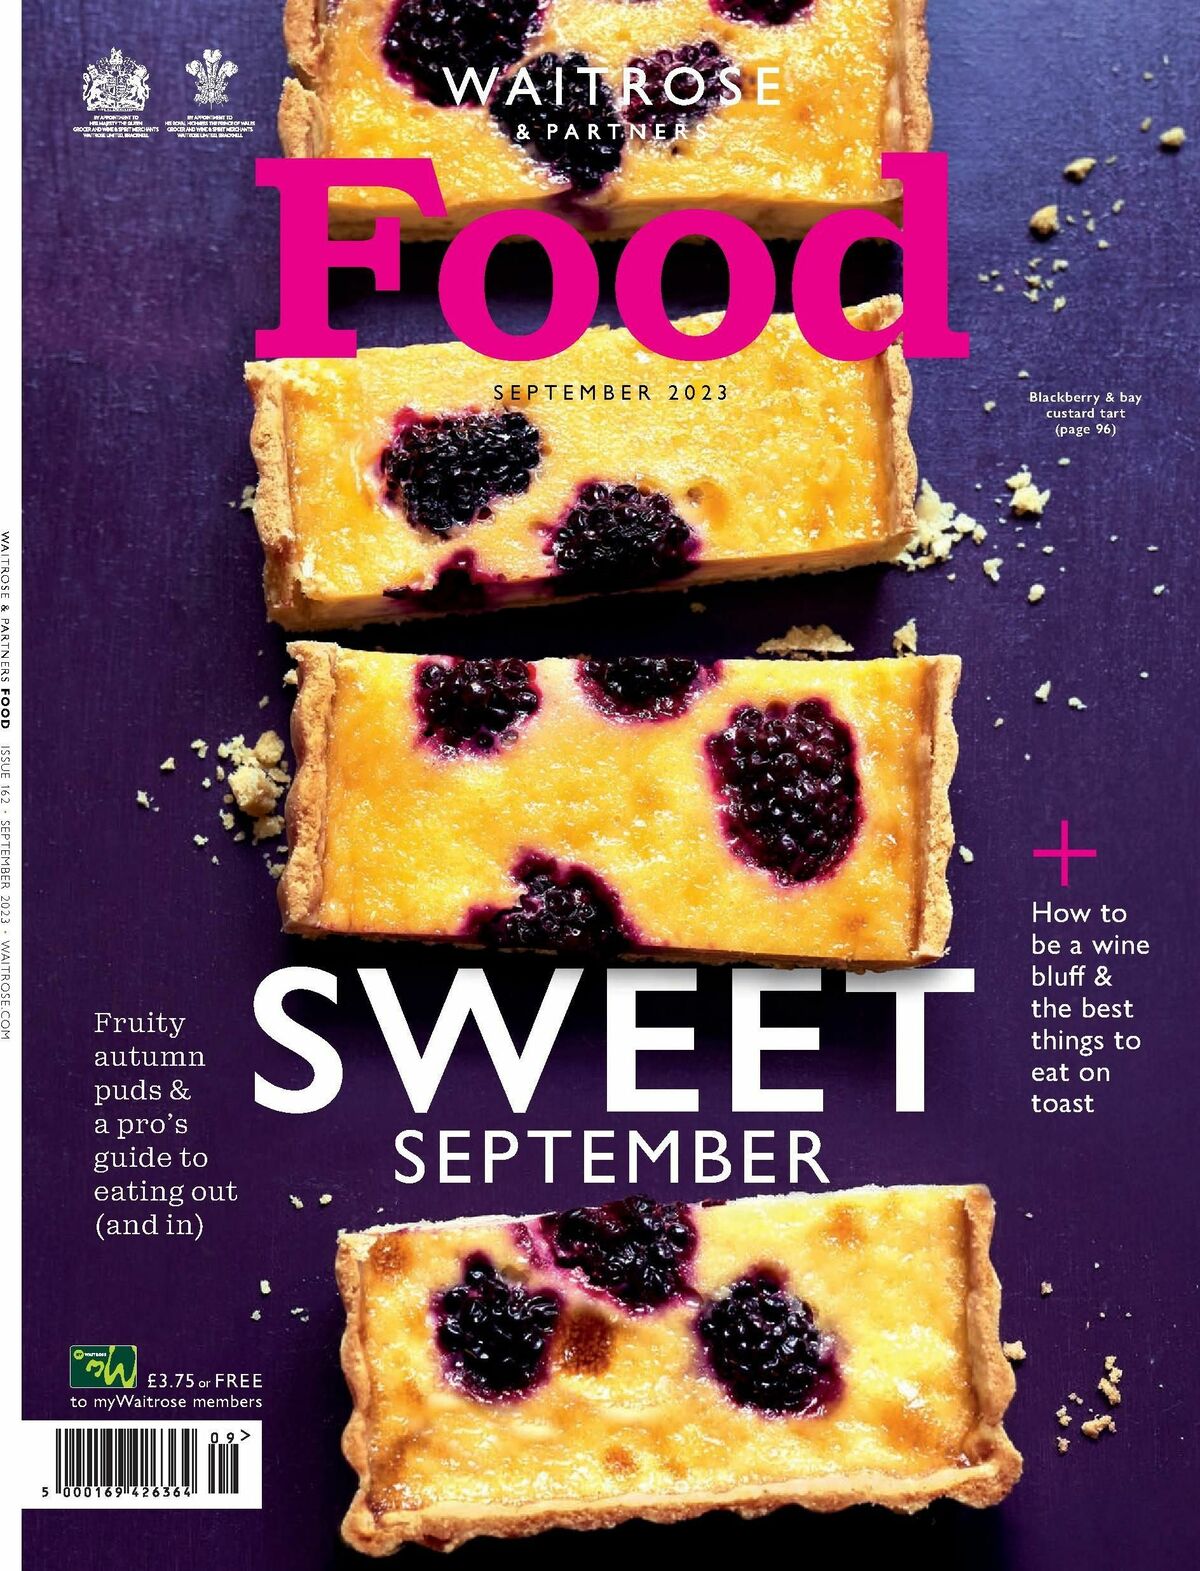 Waitrose Food Magazine September Offers from 1 September